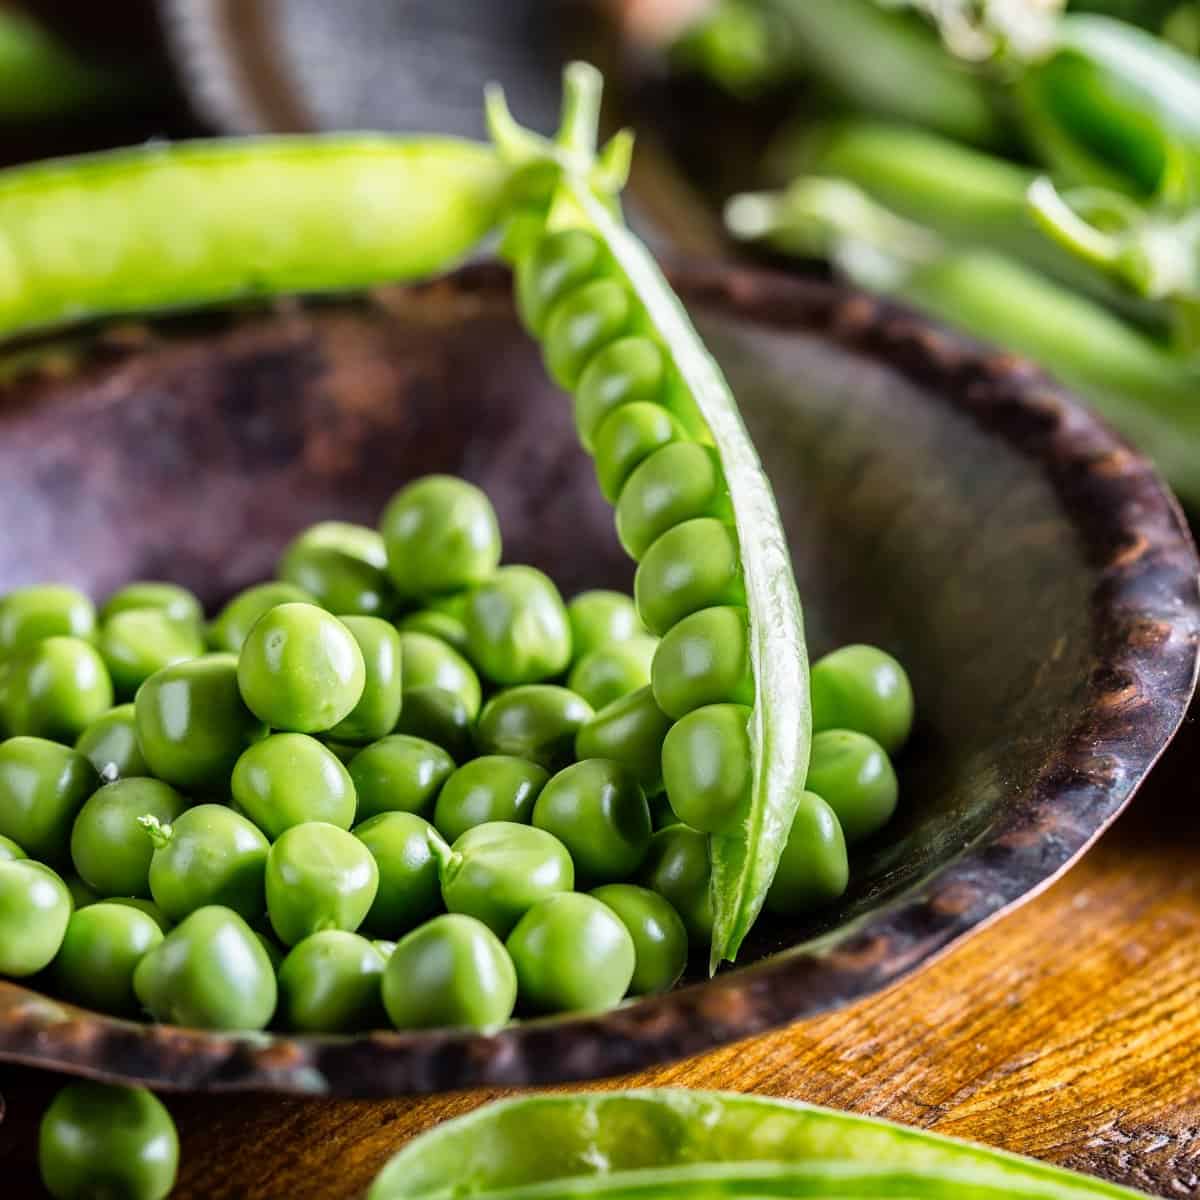 Chii chinonzi green peas